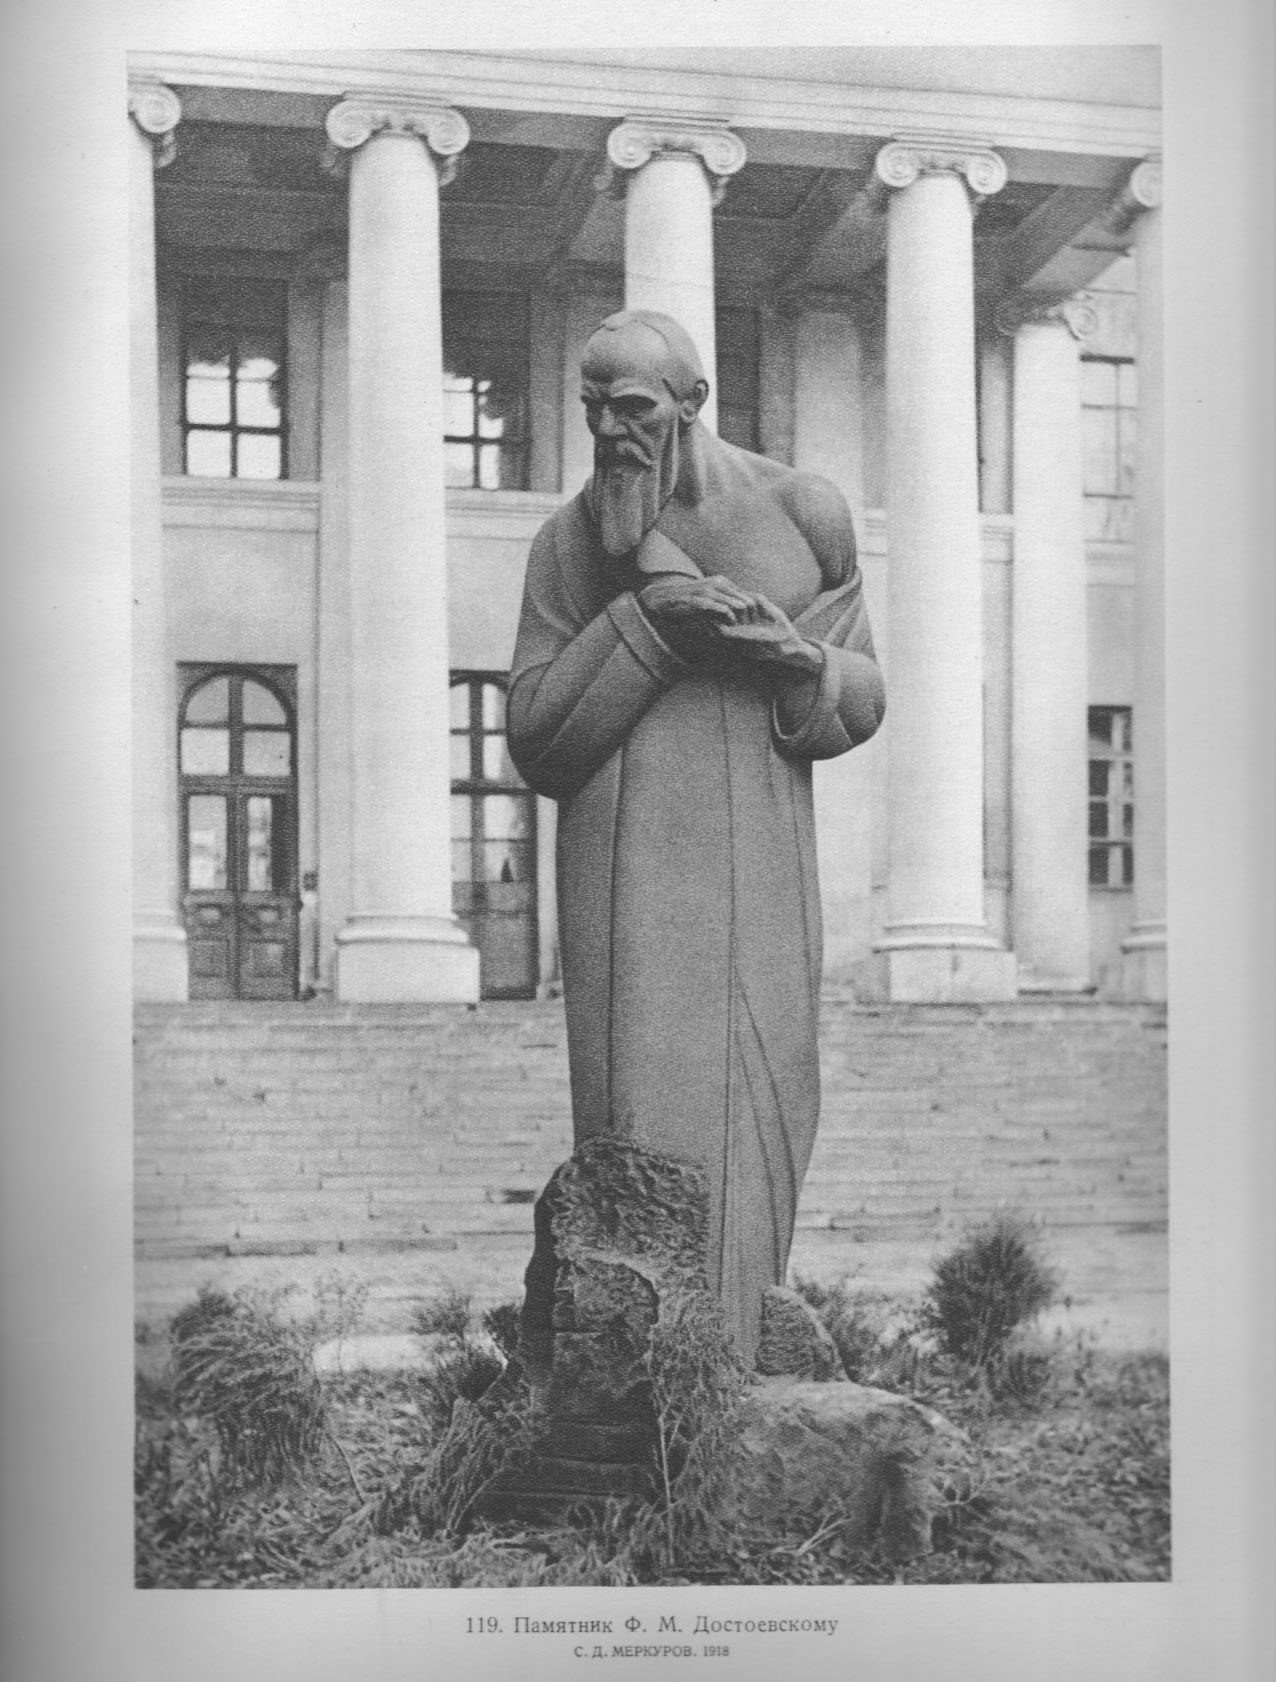 119. Памятник Ф. М. Достоевскому. С. Д. Меркуров. 1918